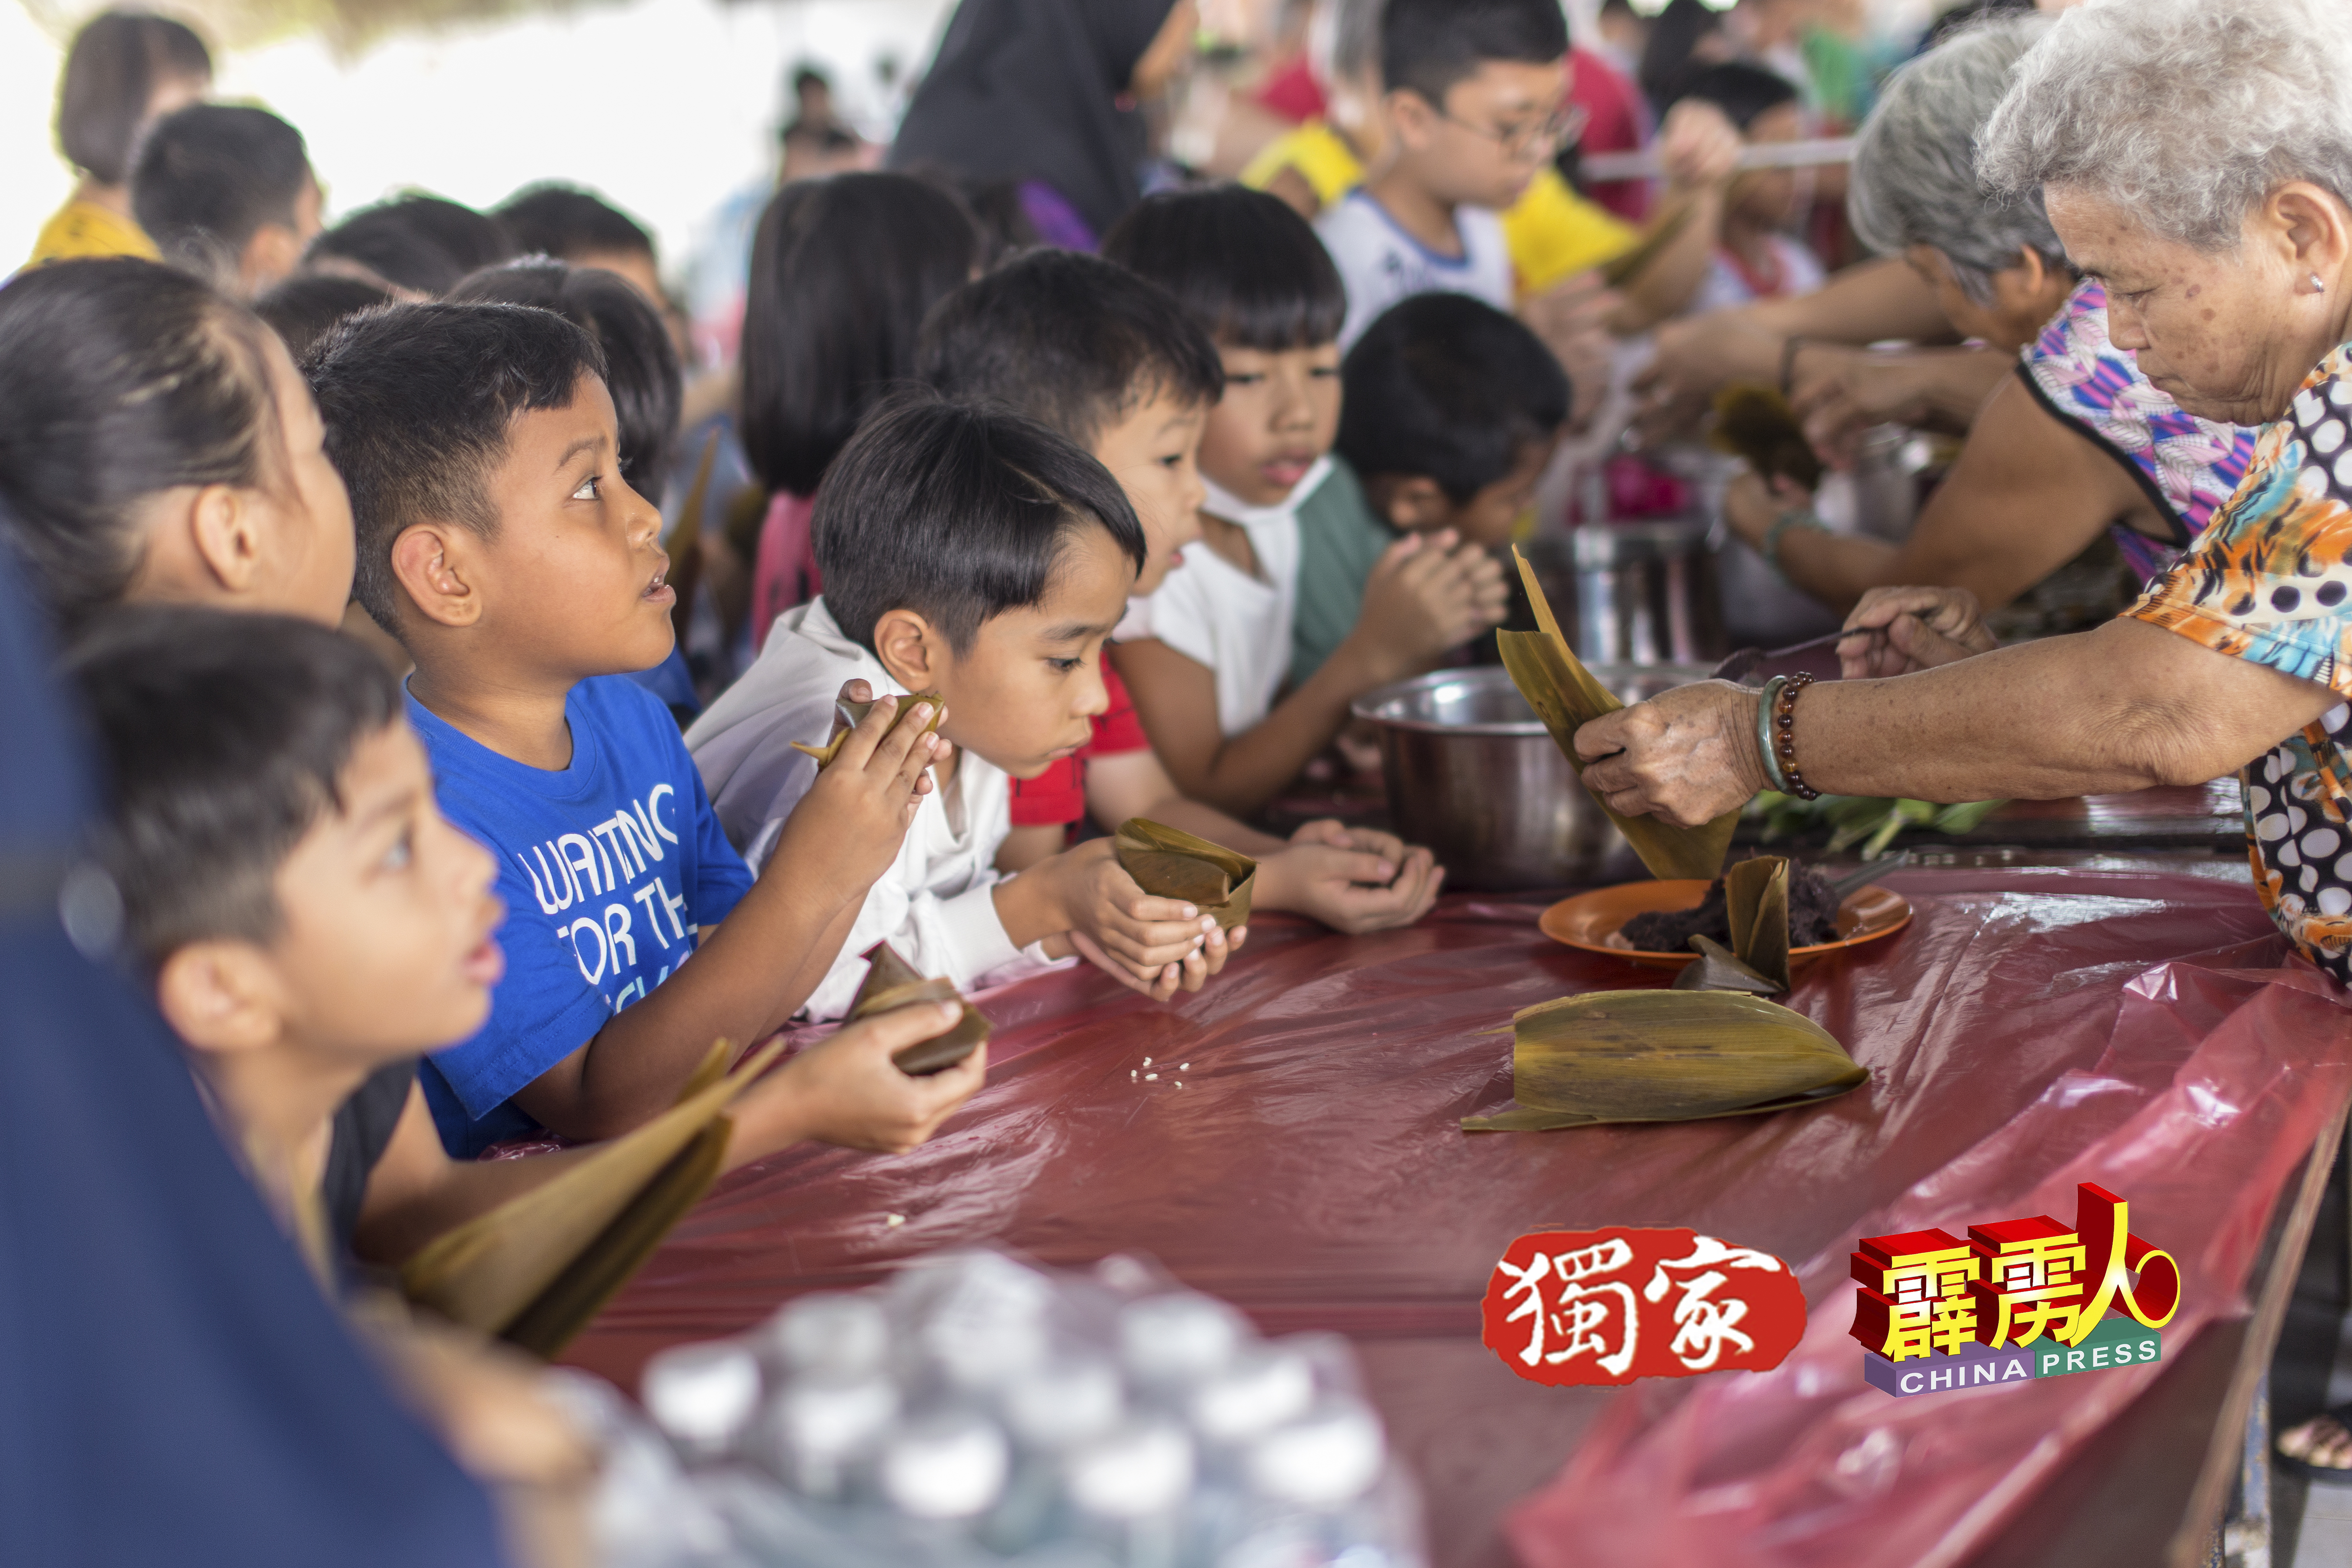 “欢庆端午节及双亲节”活动，吸引巫裔、印裔及华裔参与裹粽。